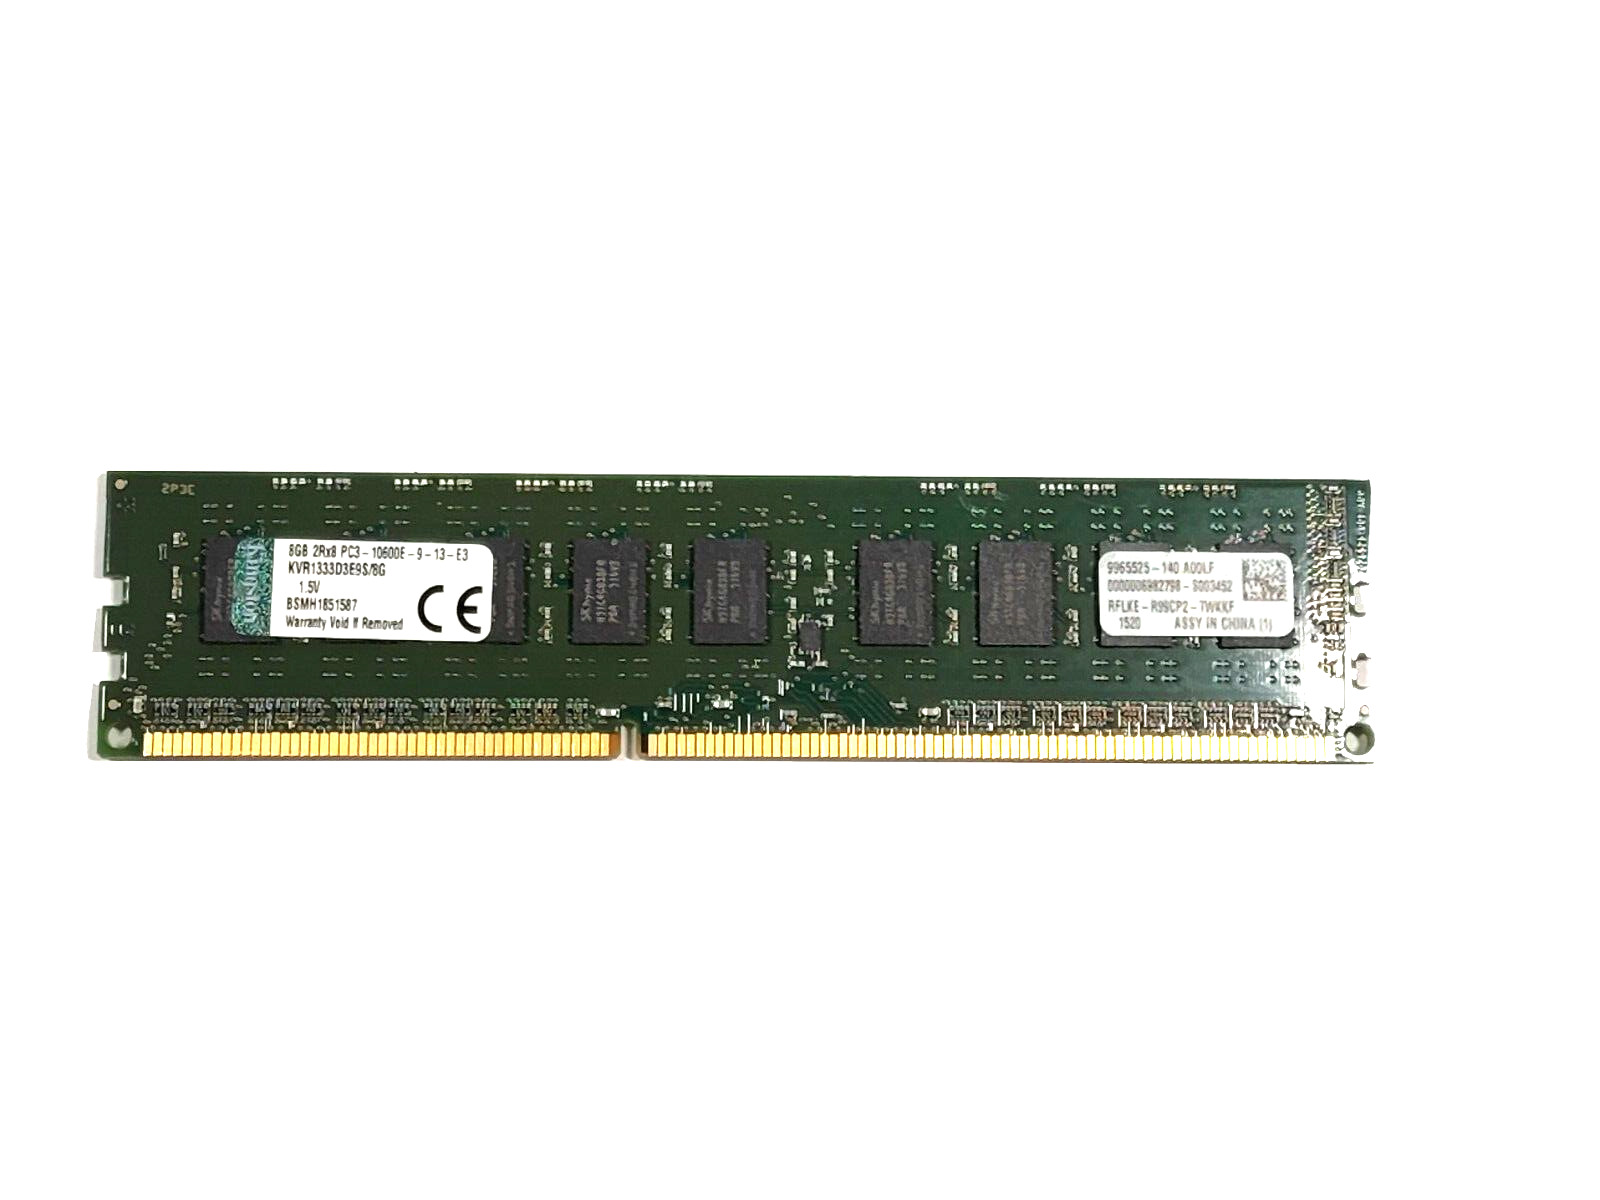 Kingston 8GB PC3-10600 DDR3-1333MHz ECC Unbuffered CL9 240-Pin DIMM Dual Rank